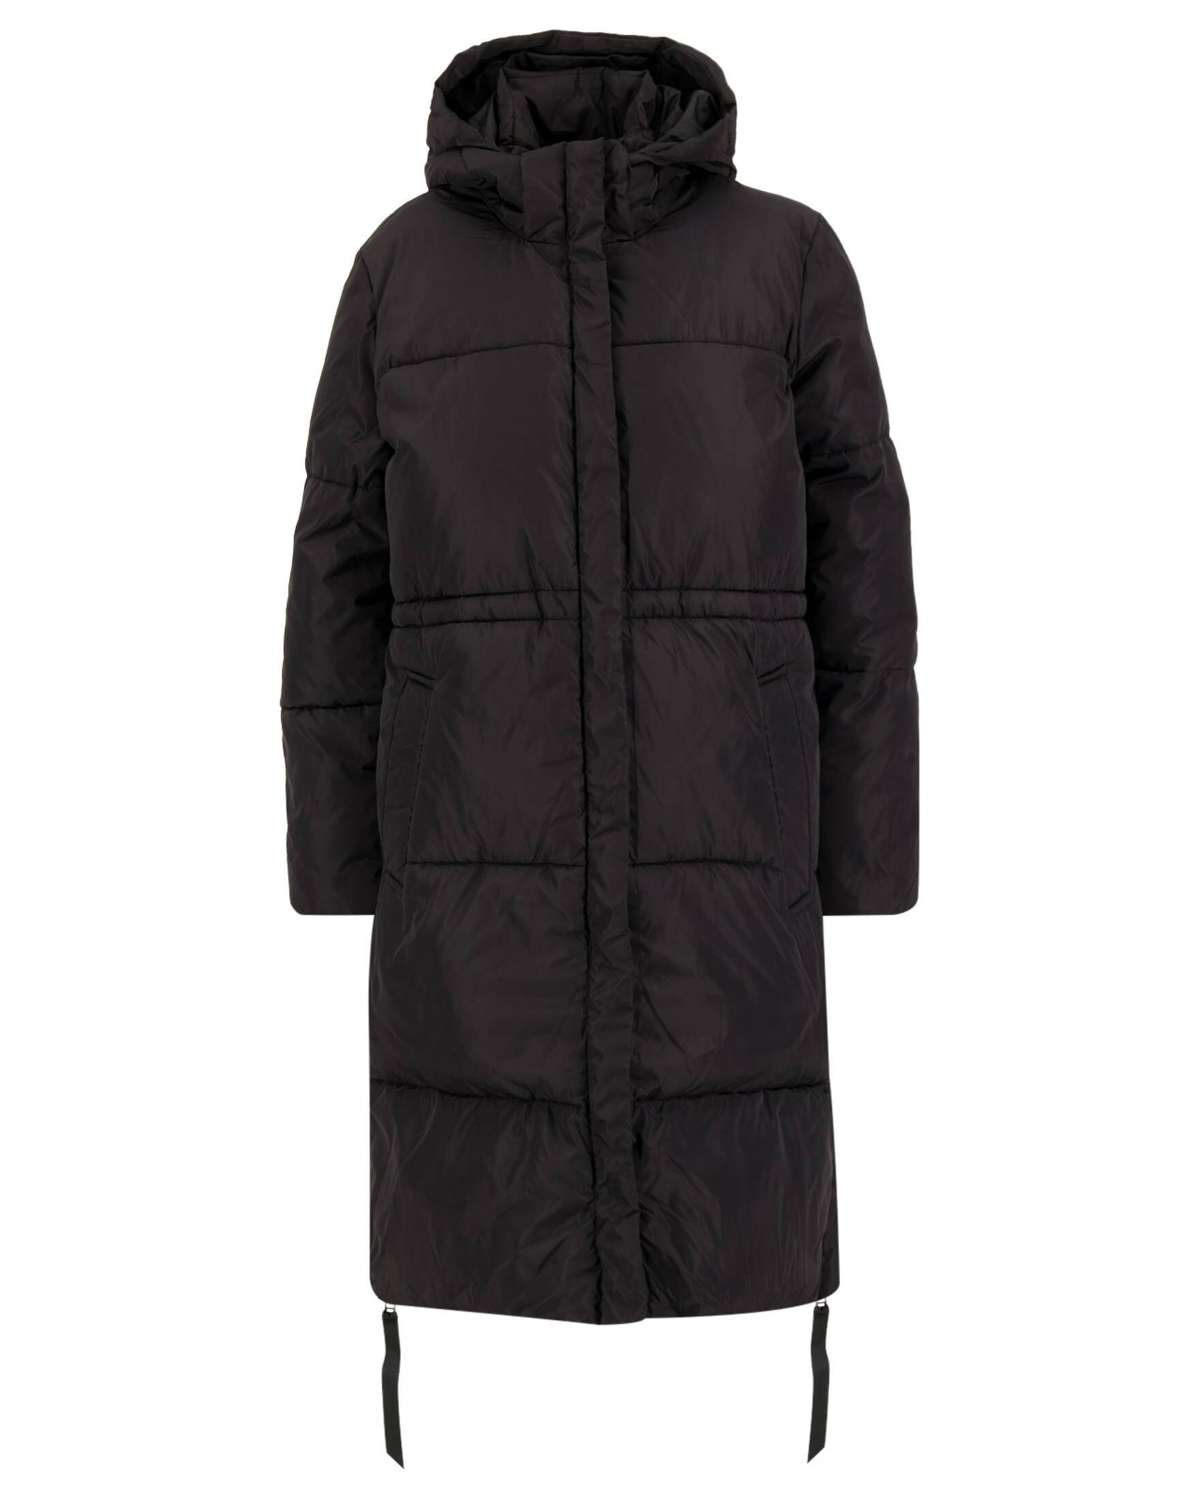 Стеганое пальто женское стеганое пальто длинное (1 штука)